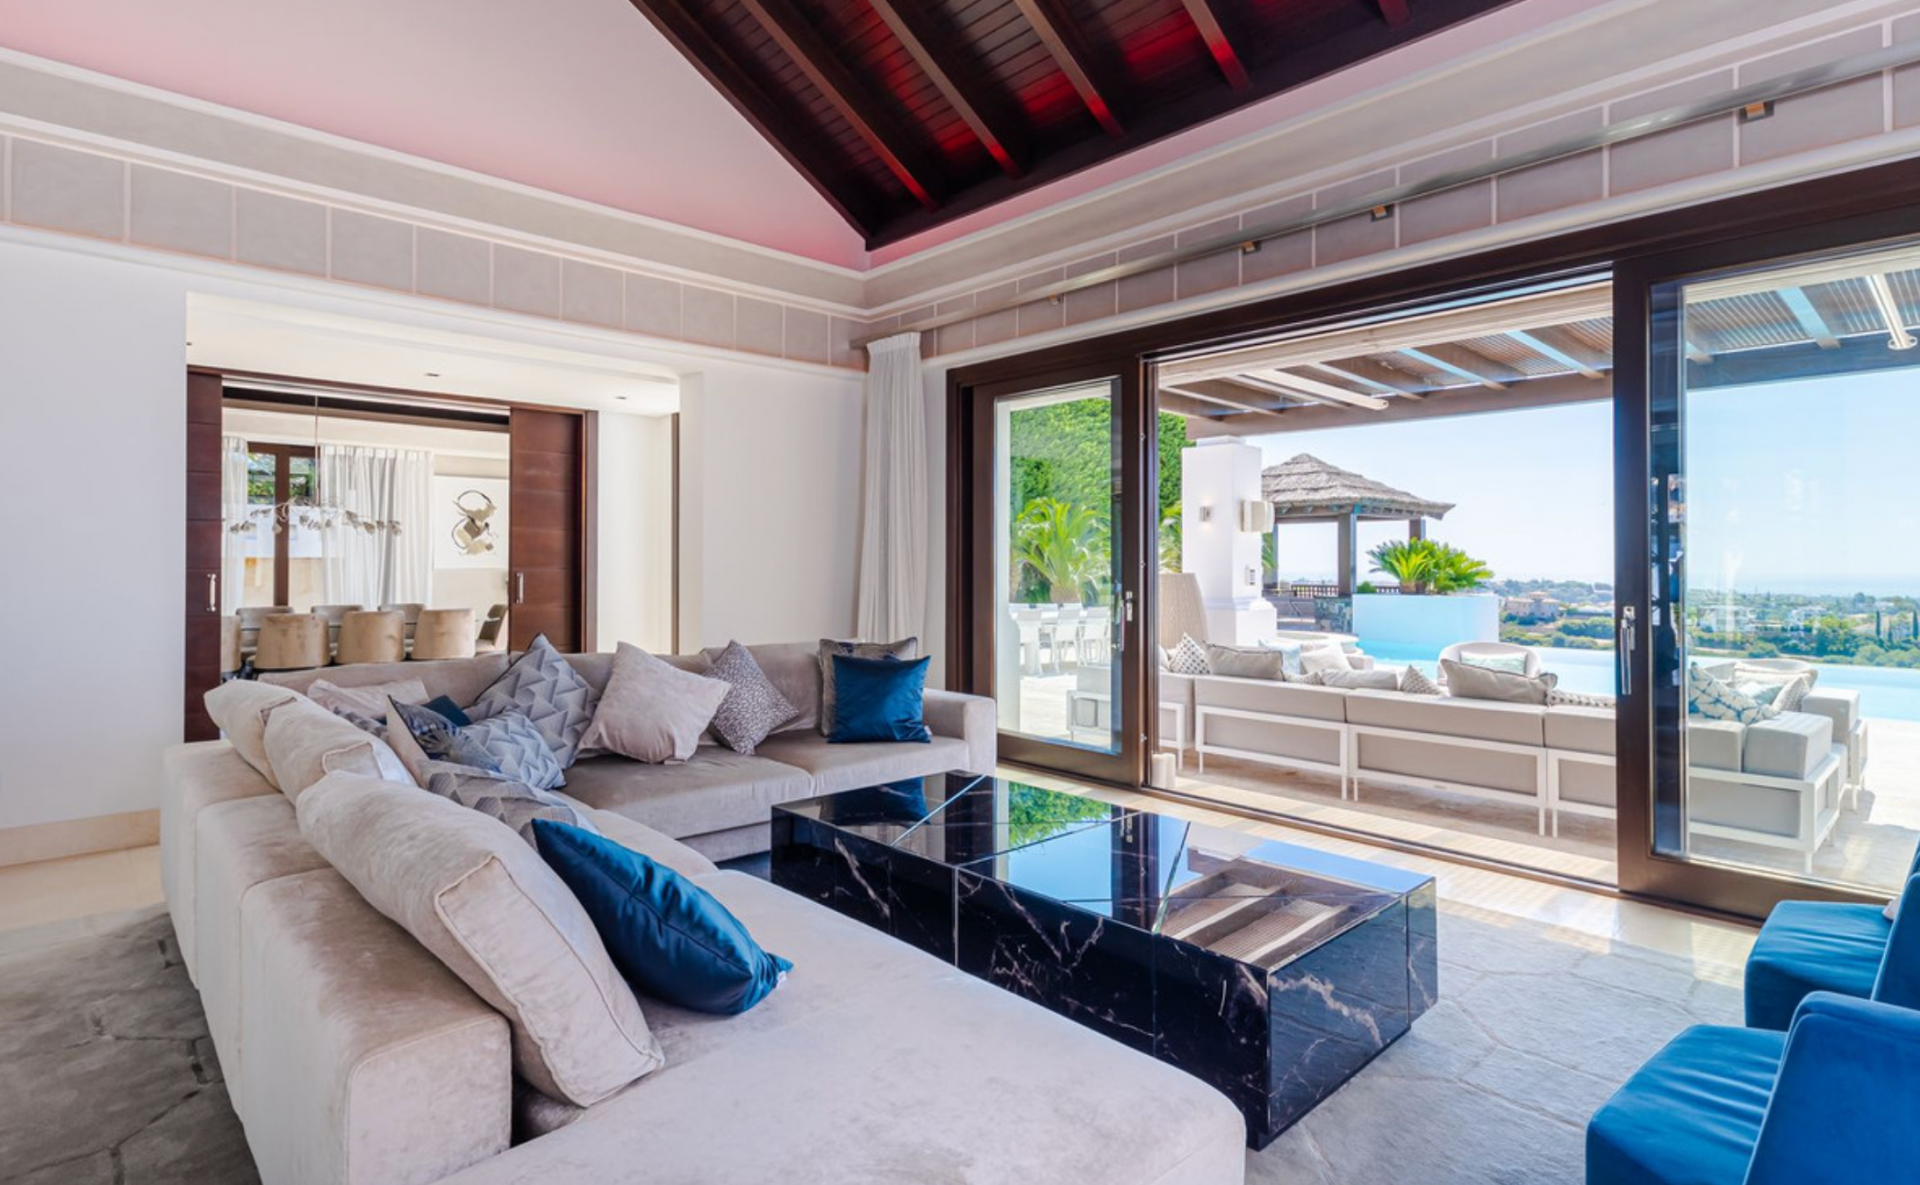 Excepcional y única villa de 5 dormitorios, construida con los más altos estándares posibles y con espectaculares vistas panorámicas al mar en Los Flamingos